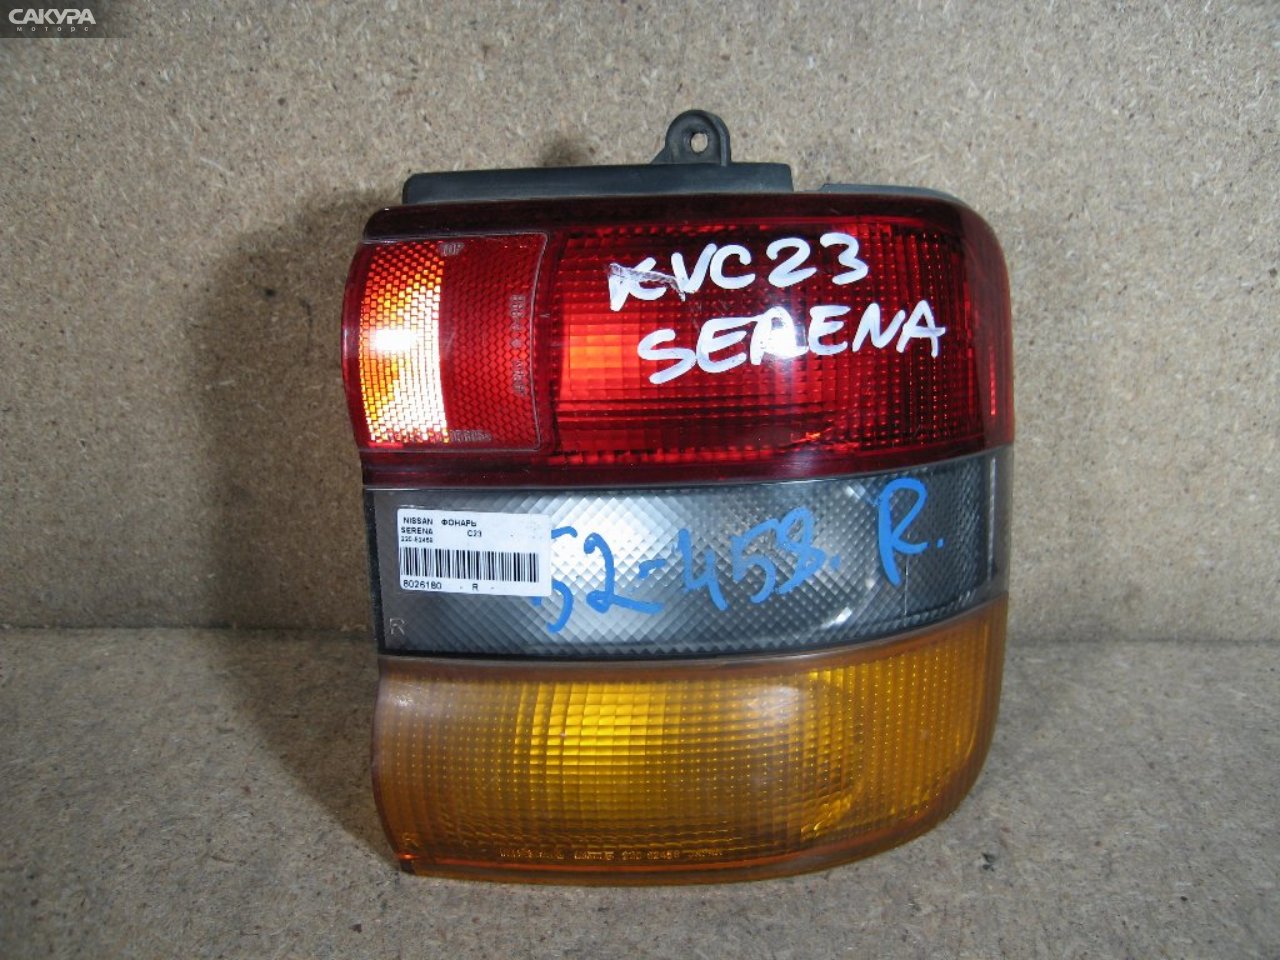 Фонарь стоп-сигнала правый Nissan Serena KBC23 220-52458: купить в Сакура Абакан.